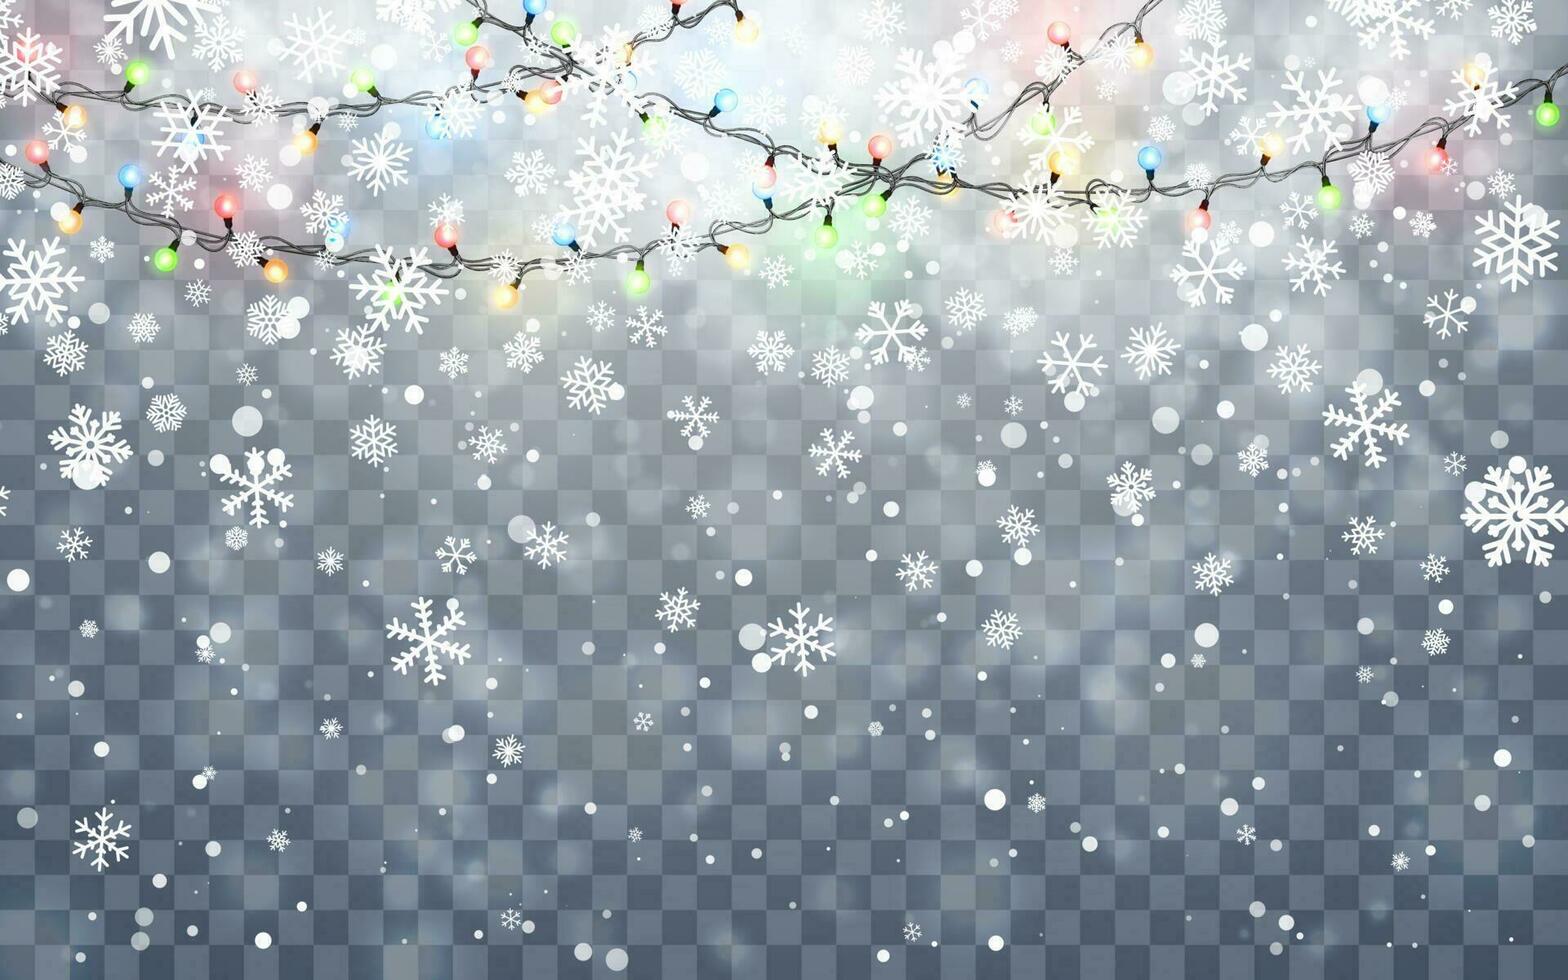 Navidad nieve. que cae blanco copos de nieve en oscuro antecedentes. Navidad color guirnalda, festivo decoraciones brillante Navidad luces. vector nevada, copos de nieve volador en invierno aire